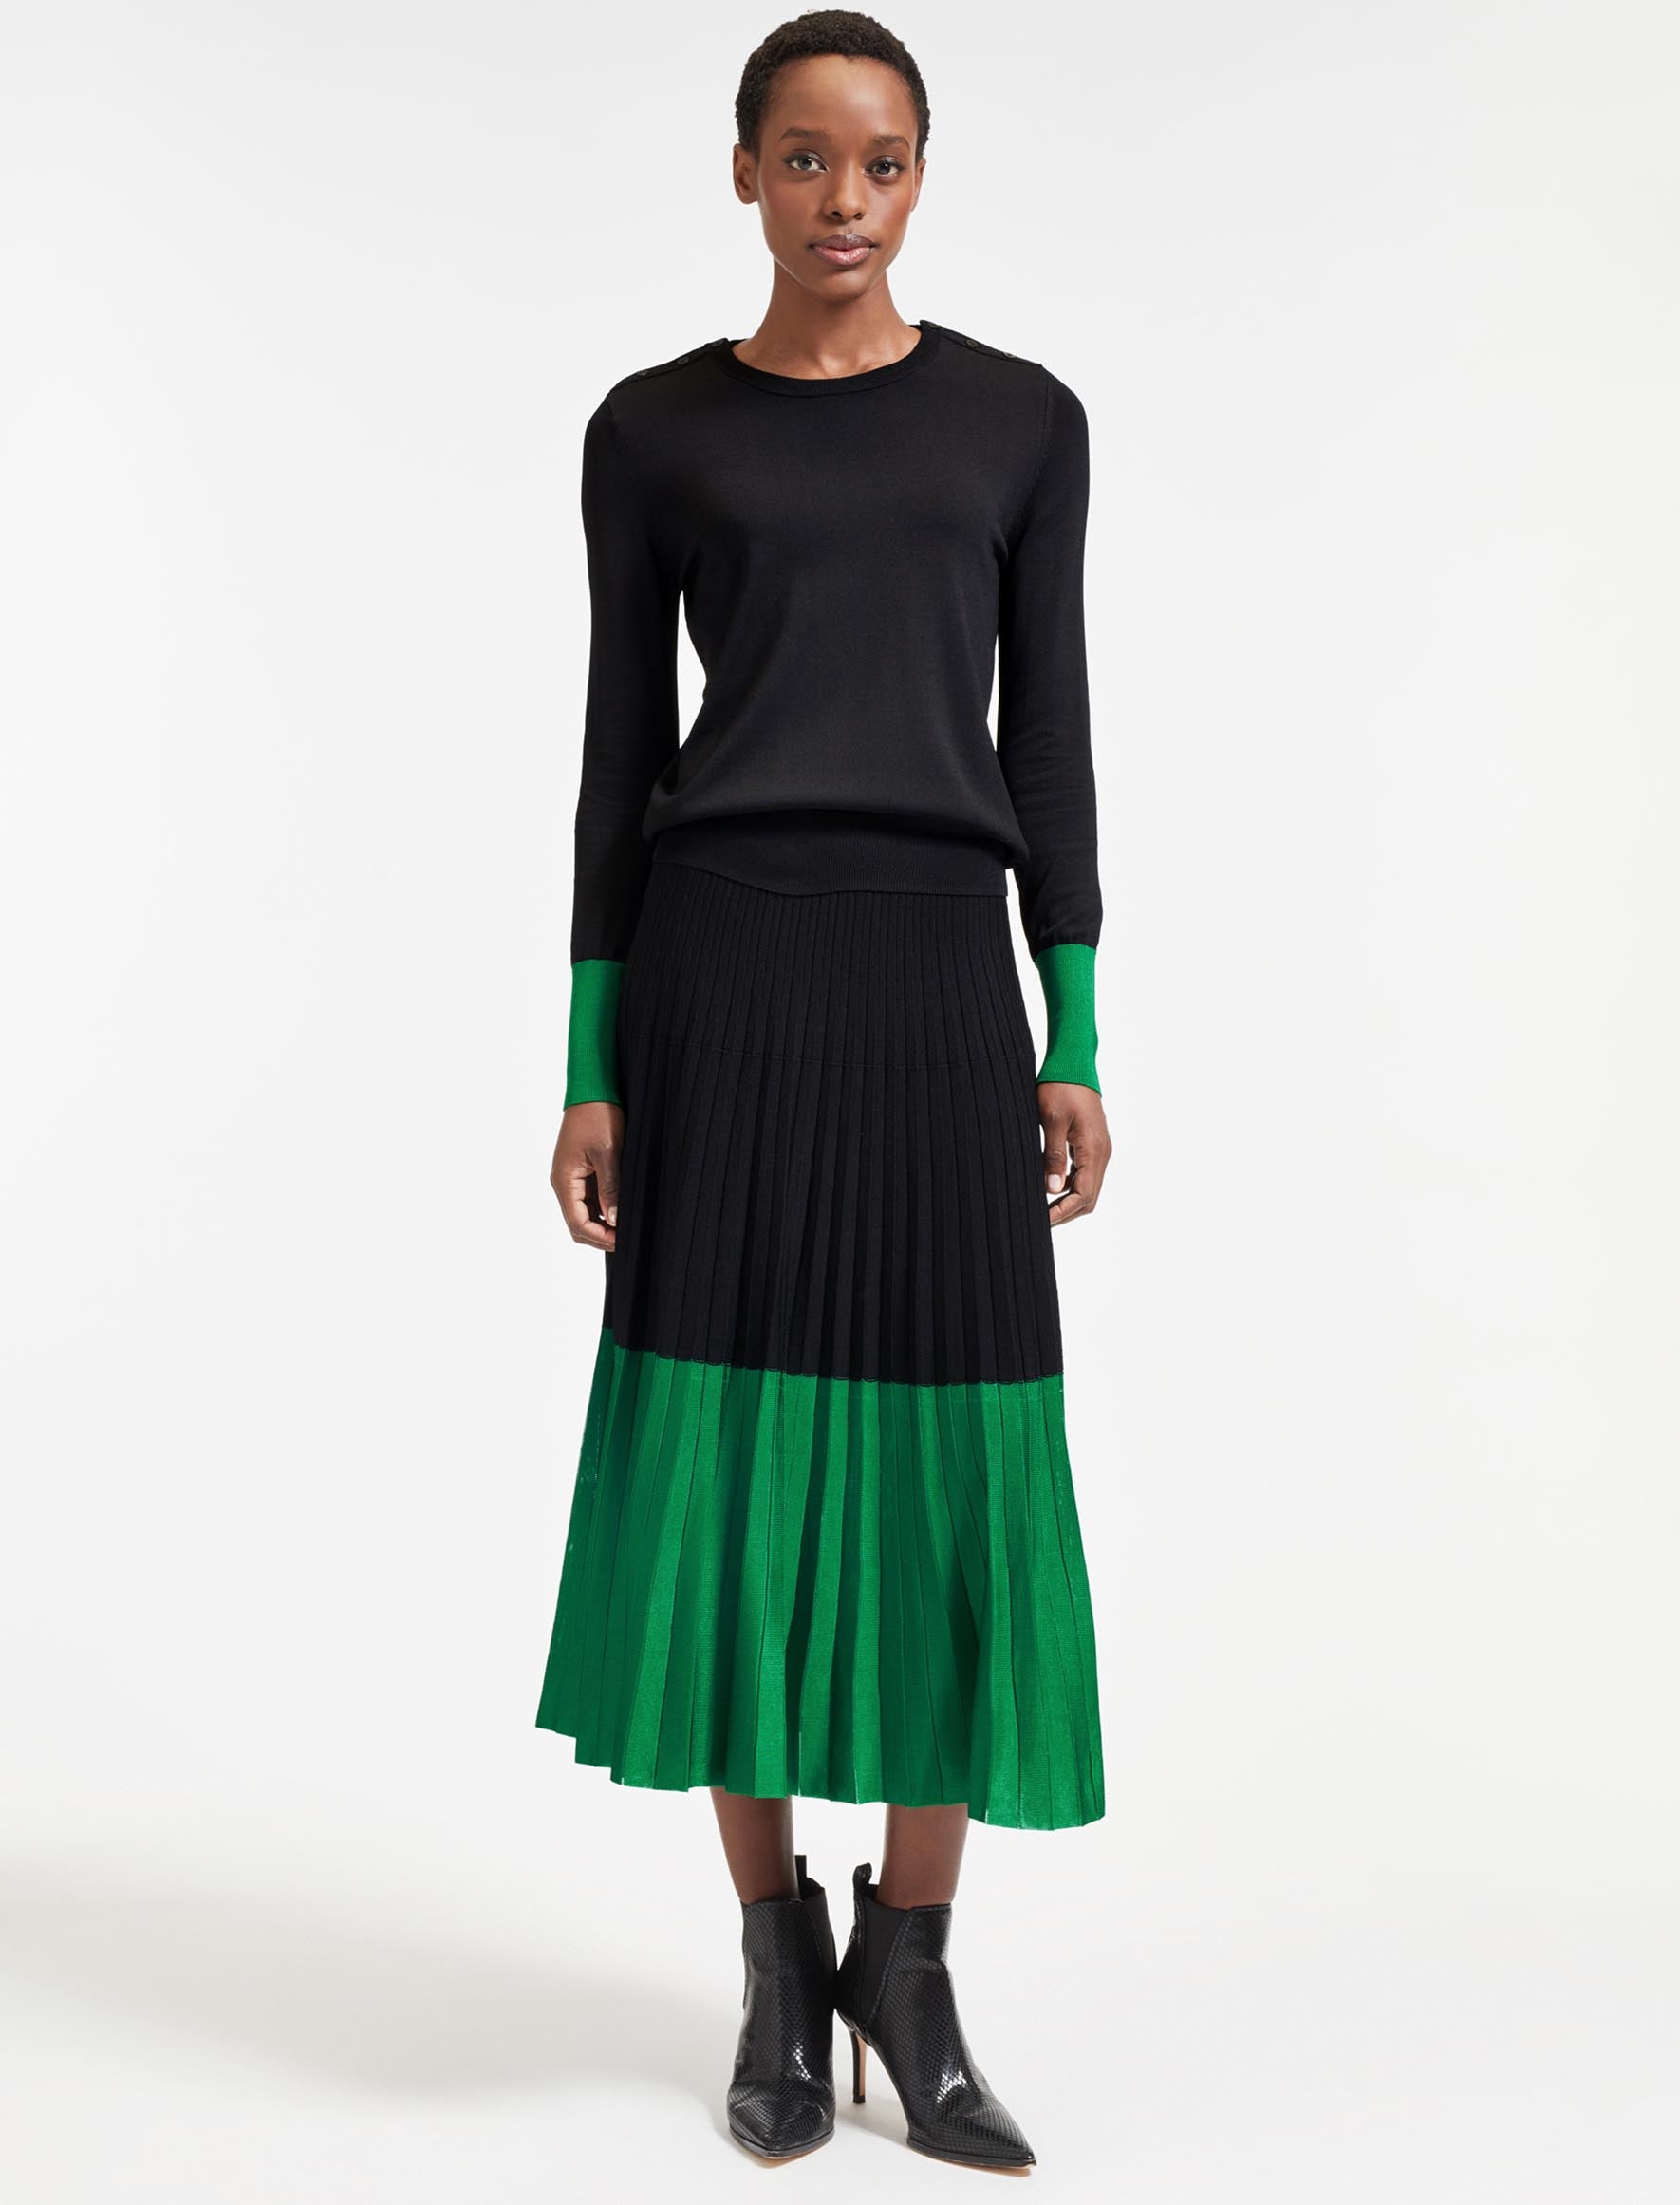 Cefinn Colette Contrast Hem Skirt - Emerald Green Black